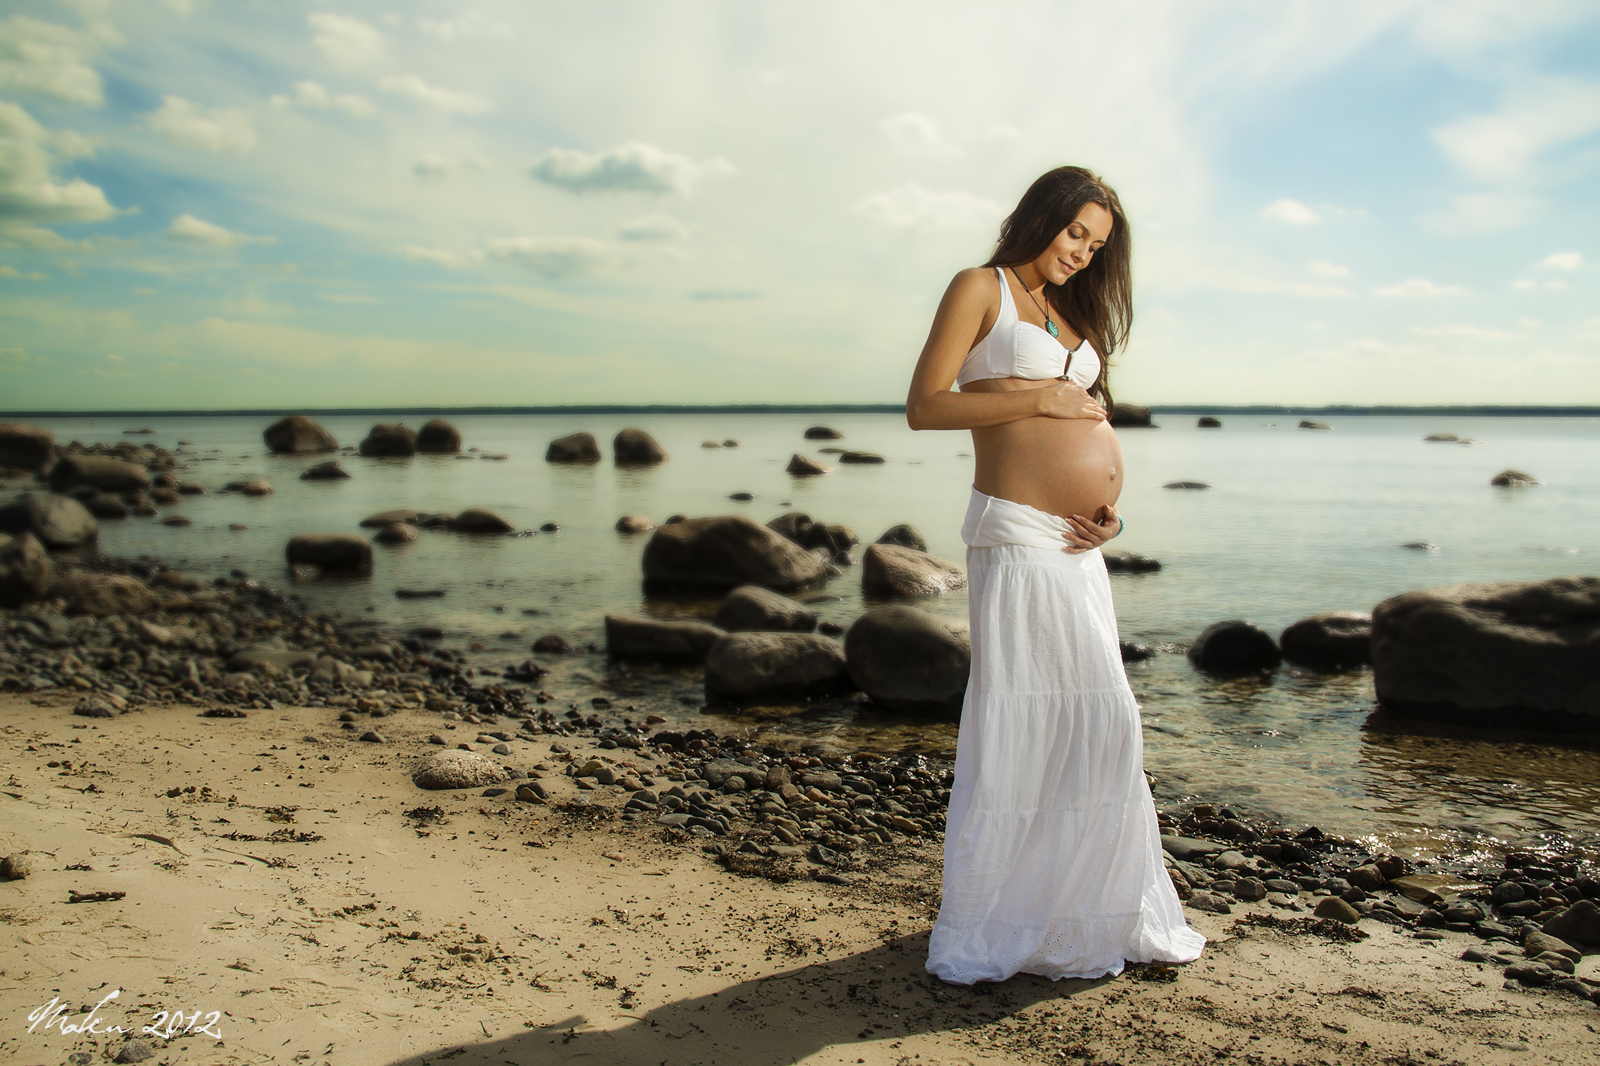 Фотографировал свою беременную жену в разных местах 